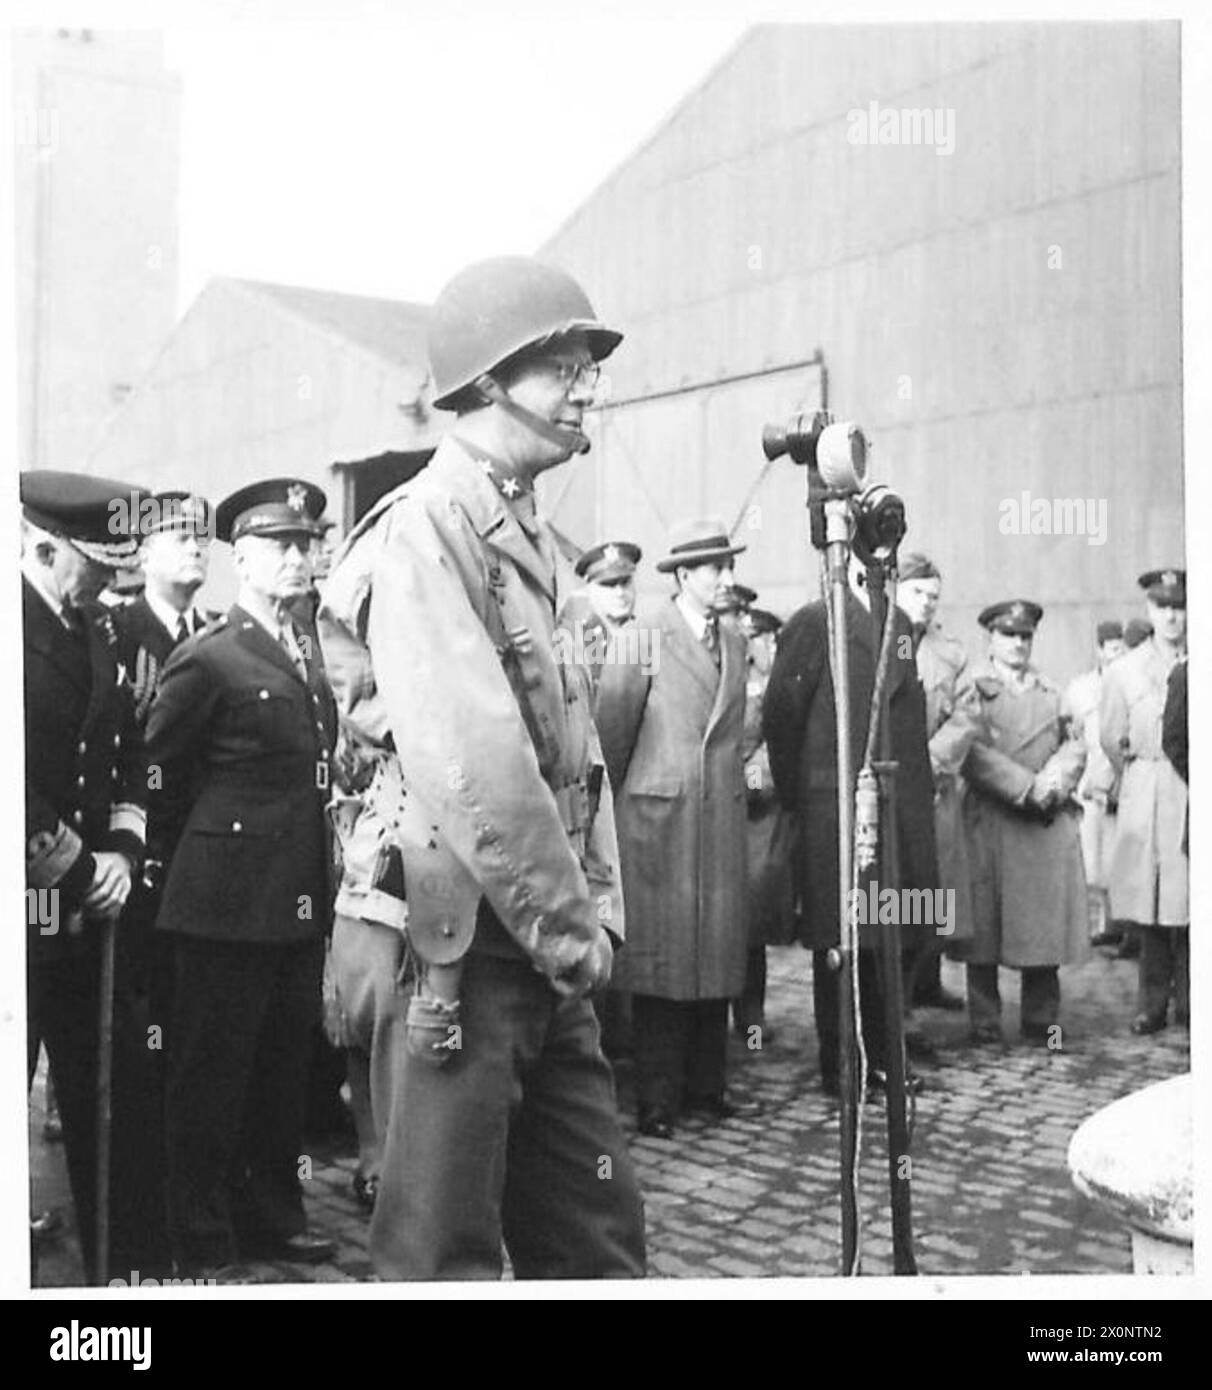 LE TRUPPE AMERICANE ARRIVANO IN IRLANDA DEL NORD - il maggior generale W.M. Robertson risponde per gli Stati Uniti al benvenuto del maggior generale L.I.G. Morgan-Owen. Negativo fotografico, British Army Foto Stock